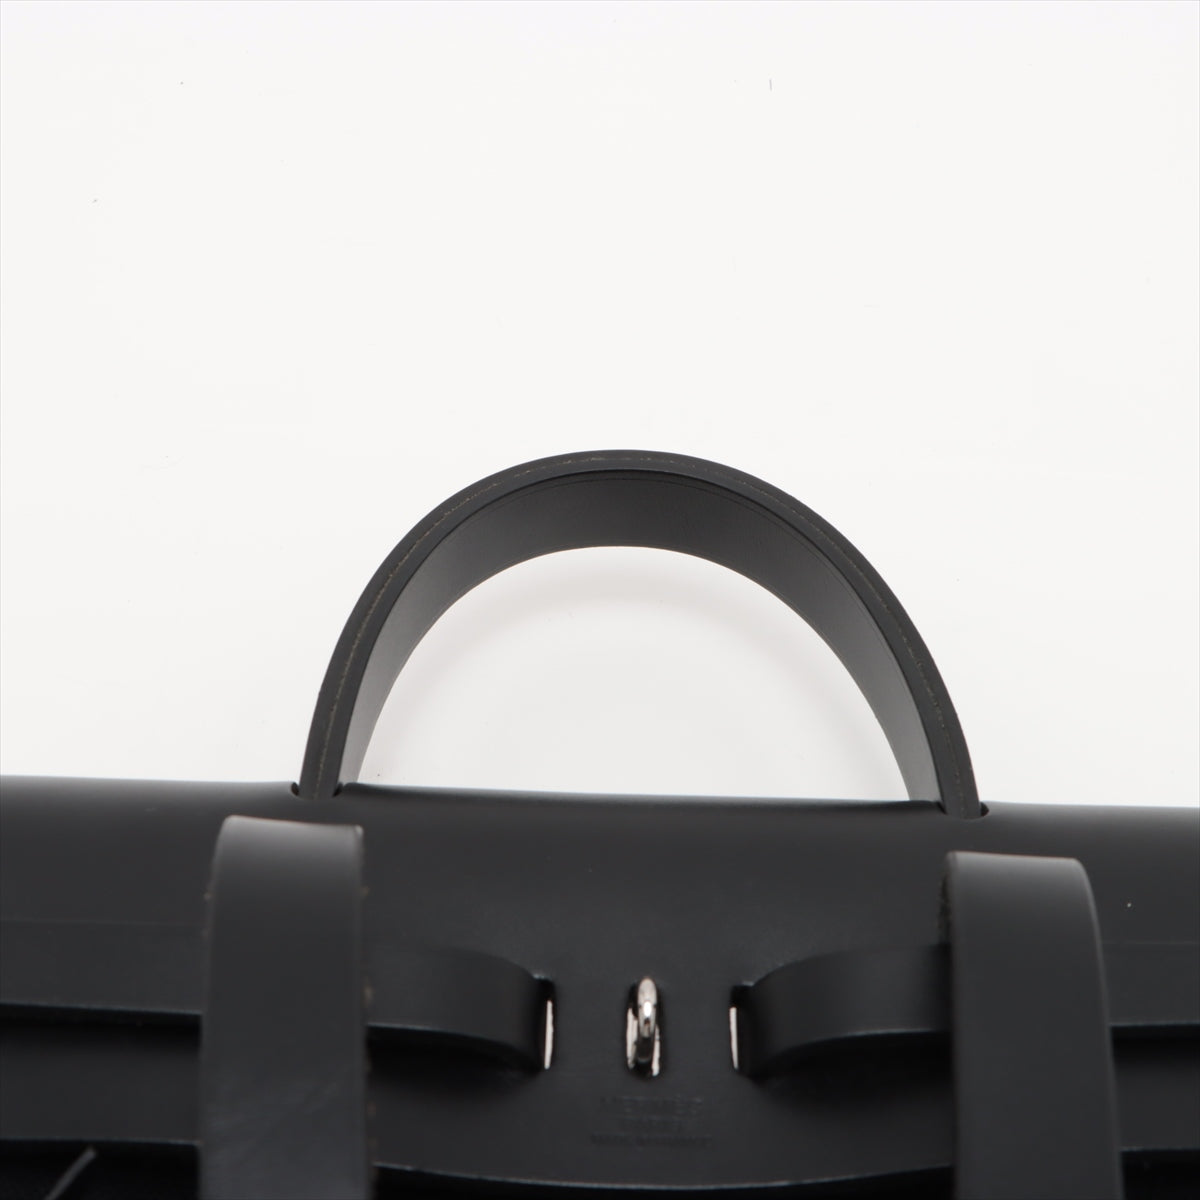 Hermès Air Bag AdPM Tower Office X Car Friseur Black Silver Gold  O:2011